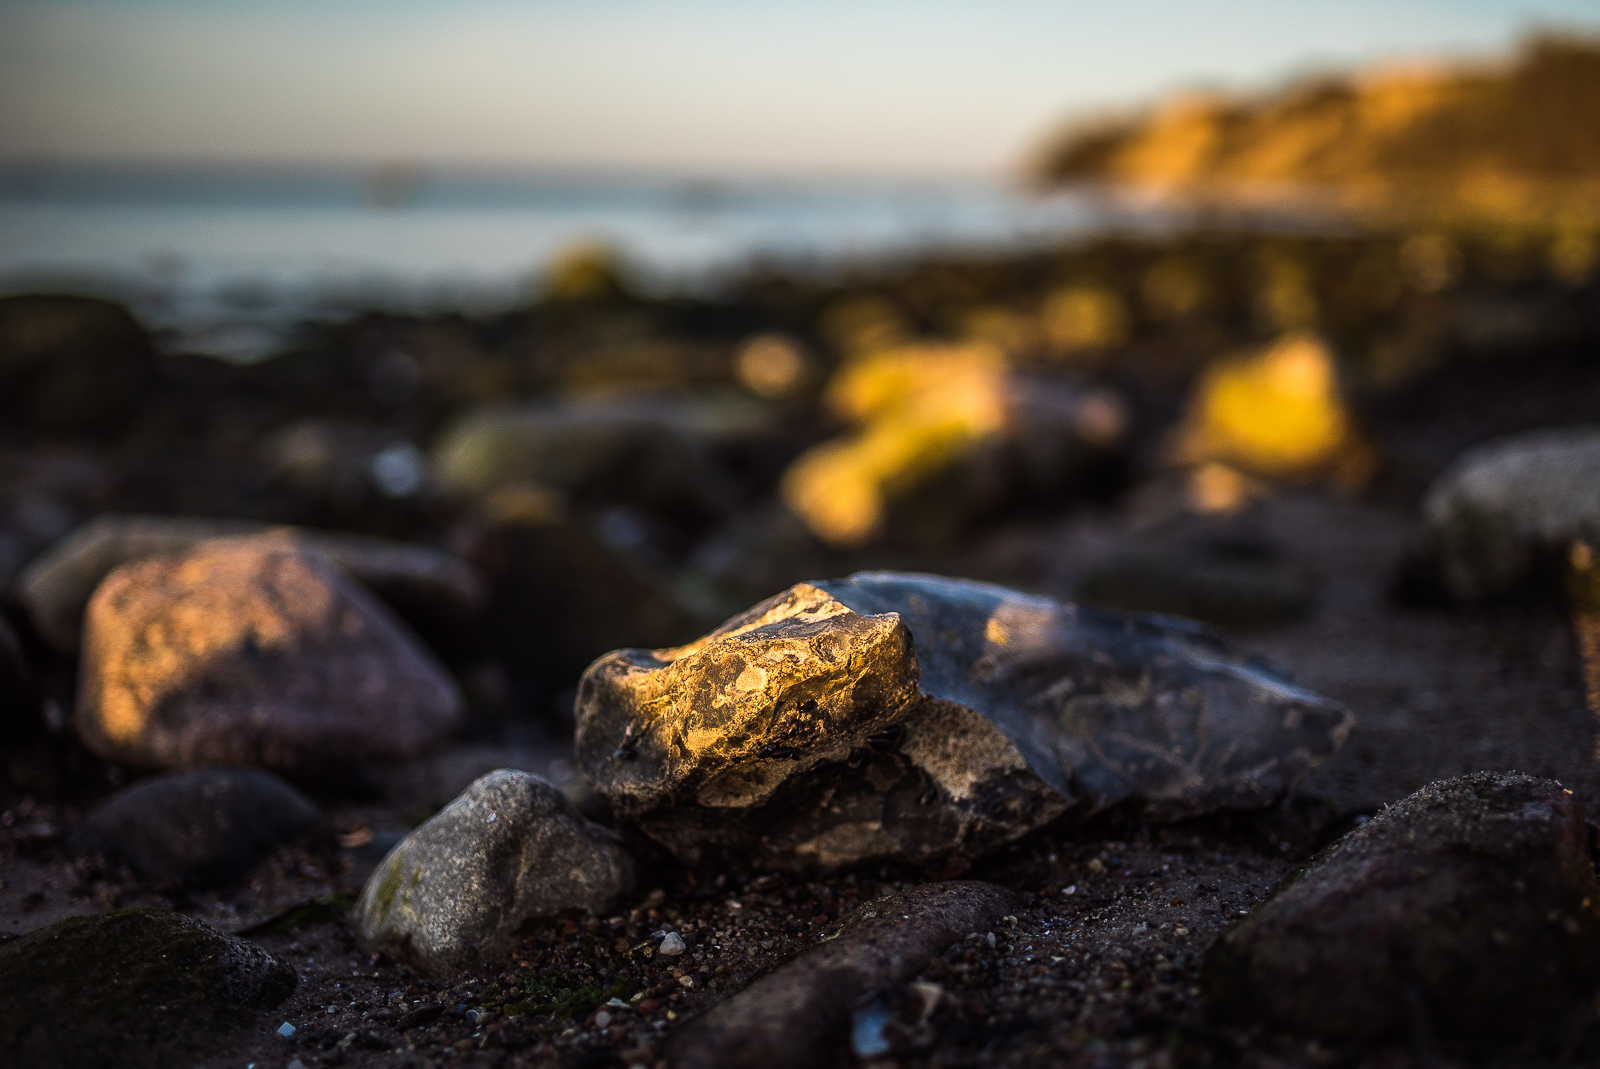 Abendlicht am felsigen Strand, fast die gesamte Küstenlandschaft liegt in Unschärfe, nur ein Flintstein, der einen Rest Sonnenlicht abbekommt, ist scharf in der unteren Bildmitte zu sehen.